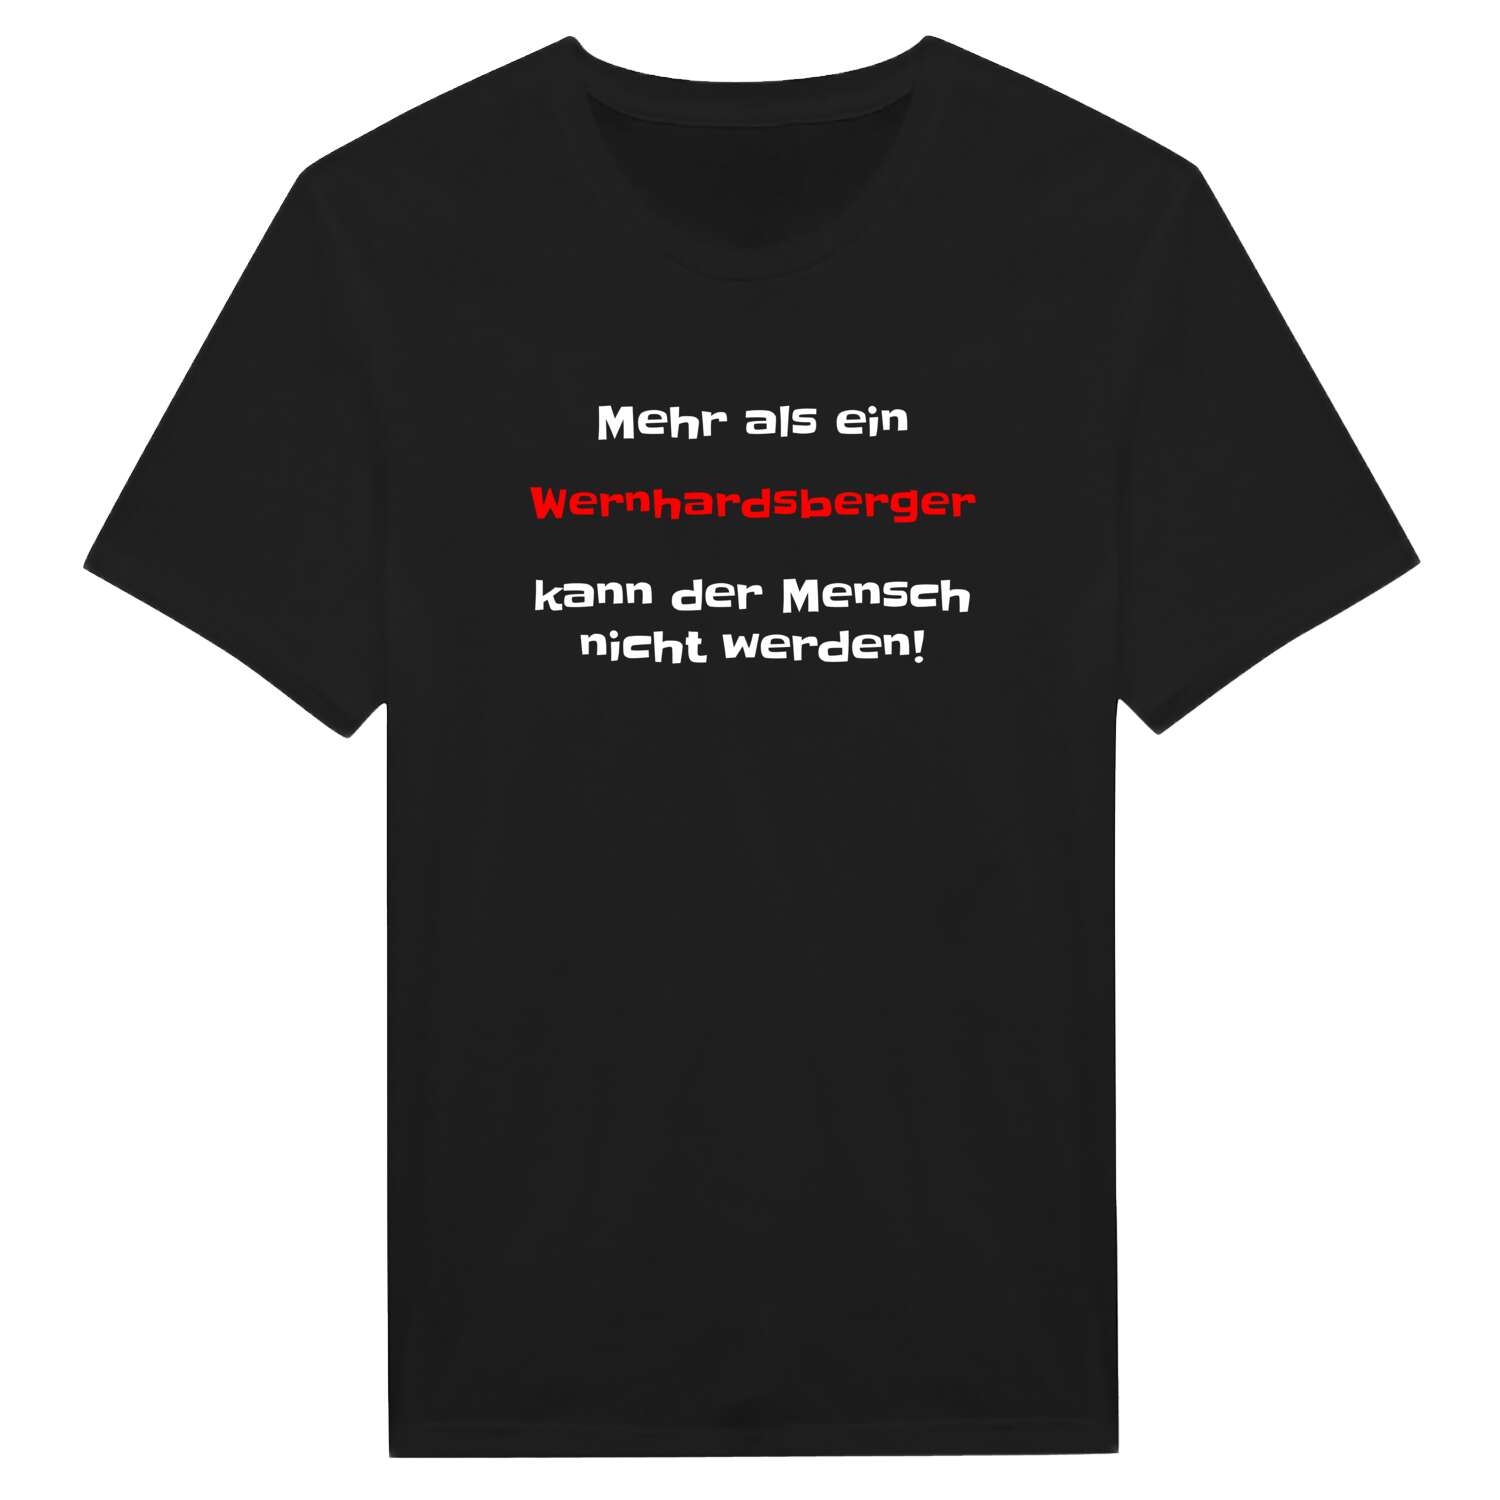 Wernhardsberg T-Shirt »Mehr als ein«